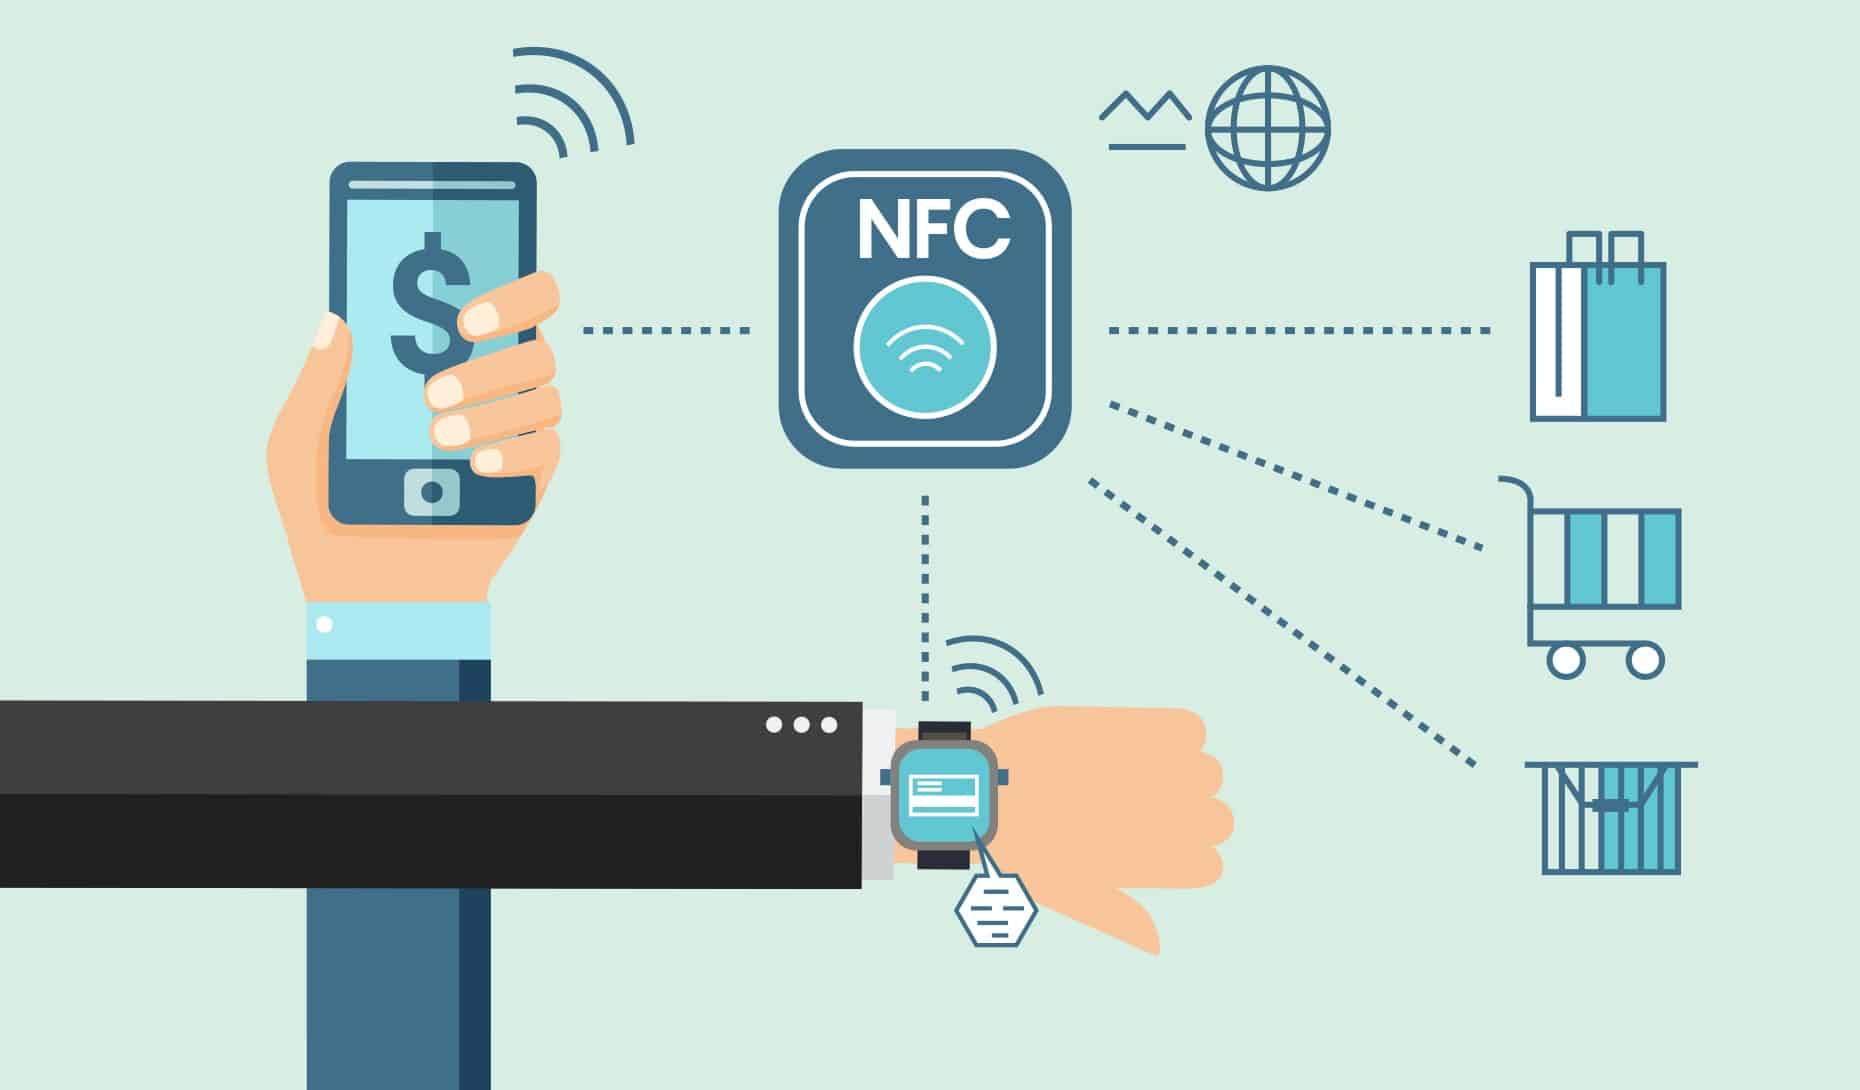 근거리 무선 통신(NFC)